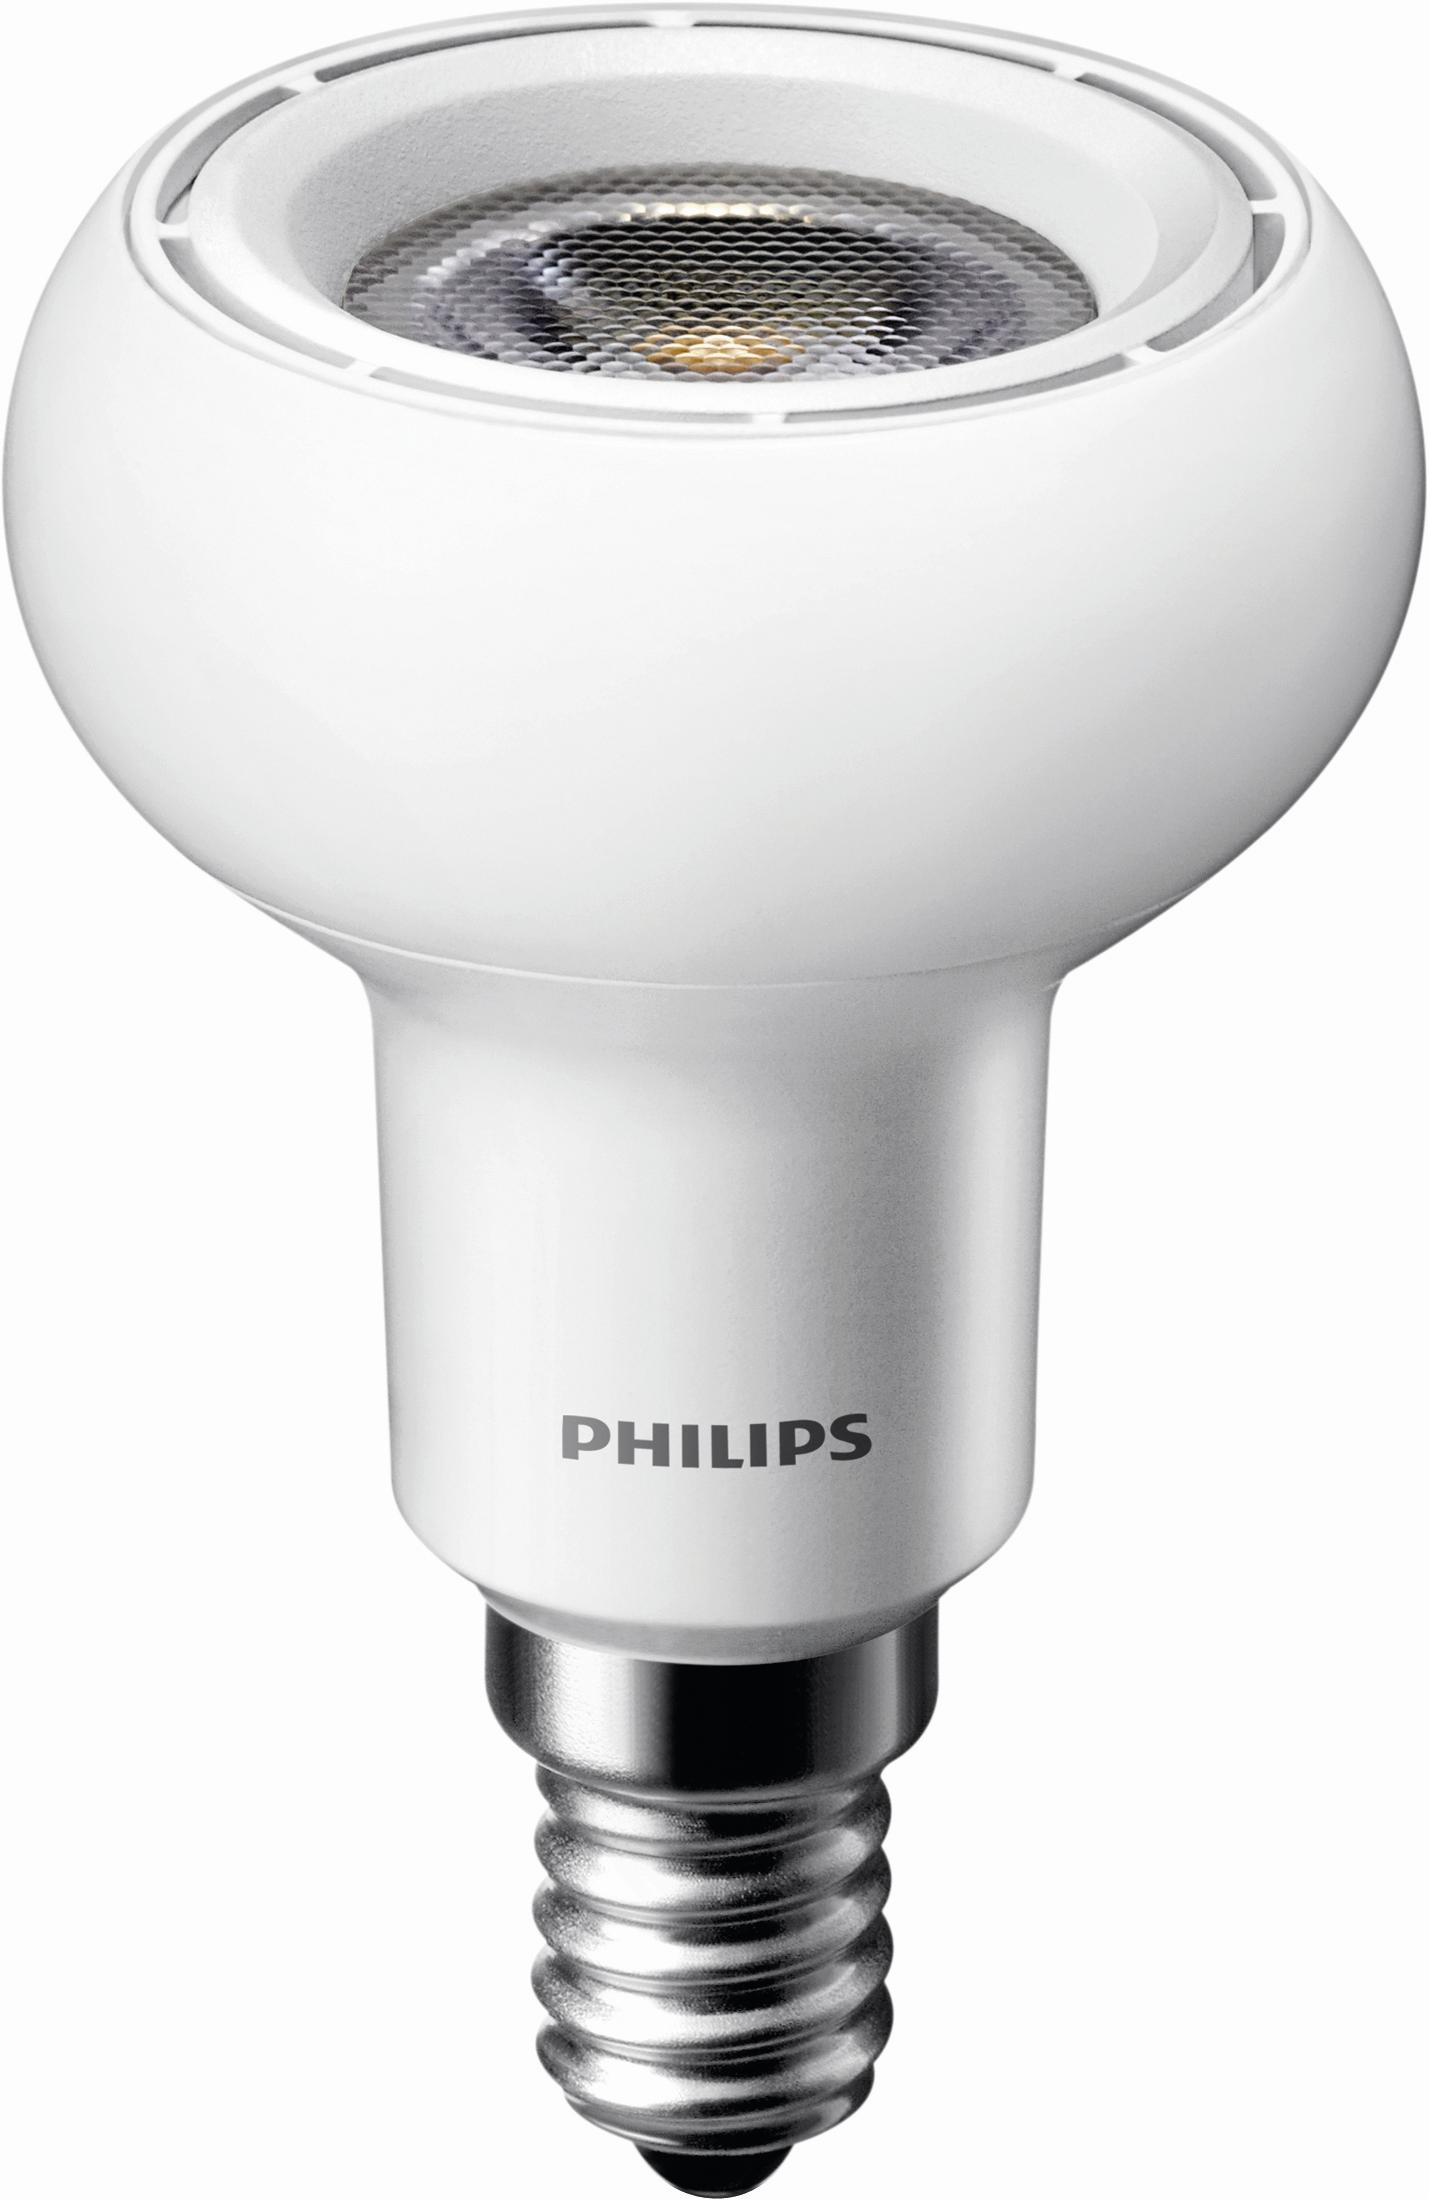 Светодиодные филипс купить. Лампа r50 e14 светодиодная. Osram spot r50 40w цоколь е14. Светодиодные лампы Филипс. Лампа светодиодная Philips Essential led 2700к, e14, b35, 4вт.